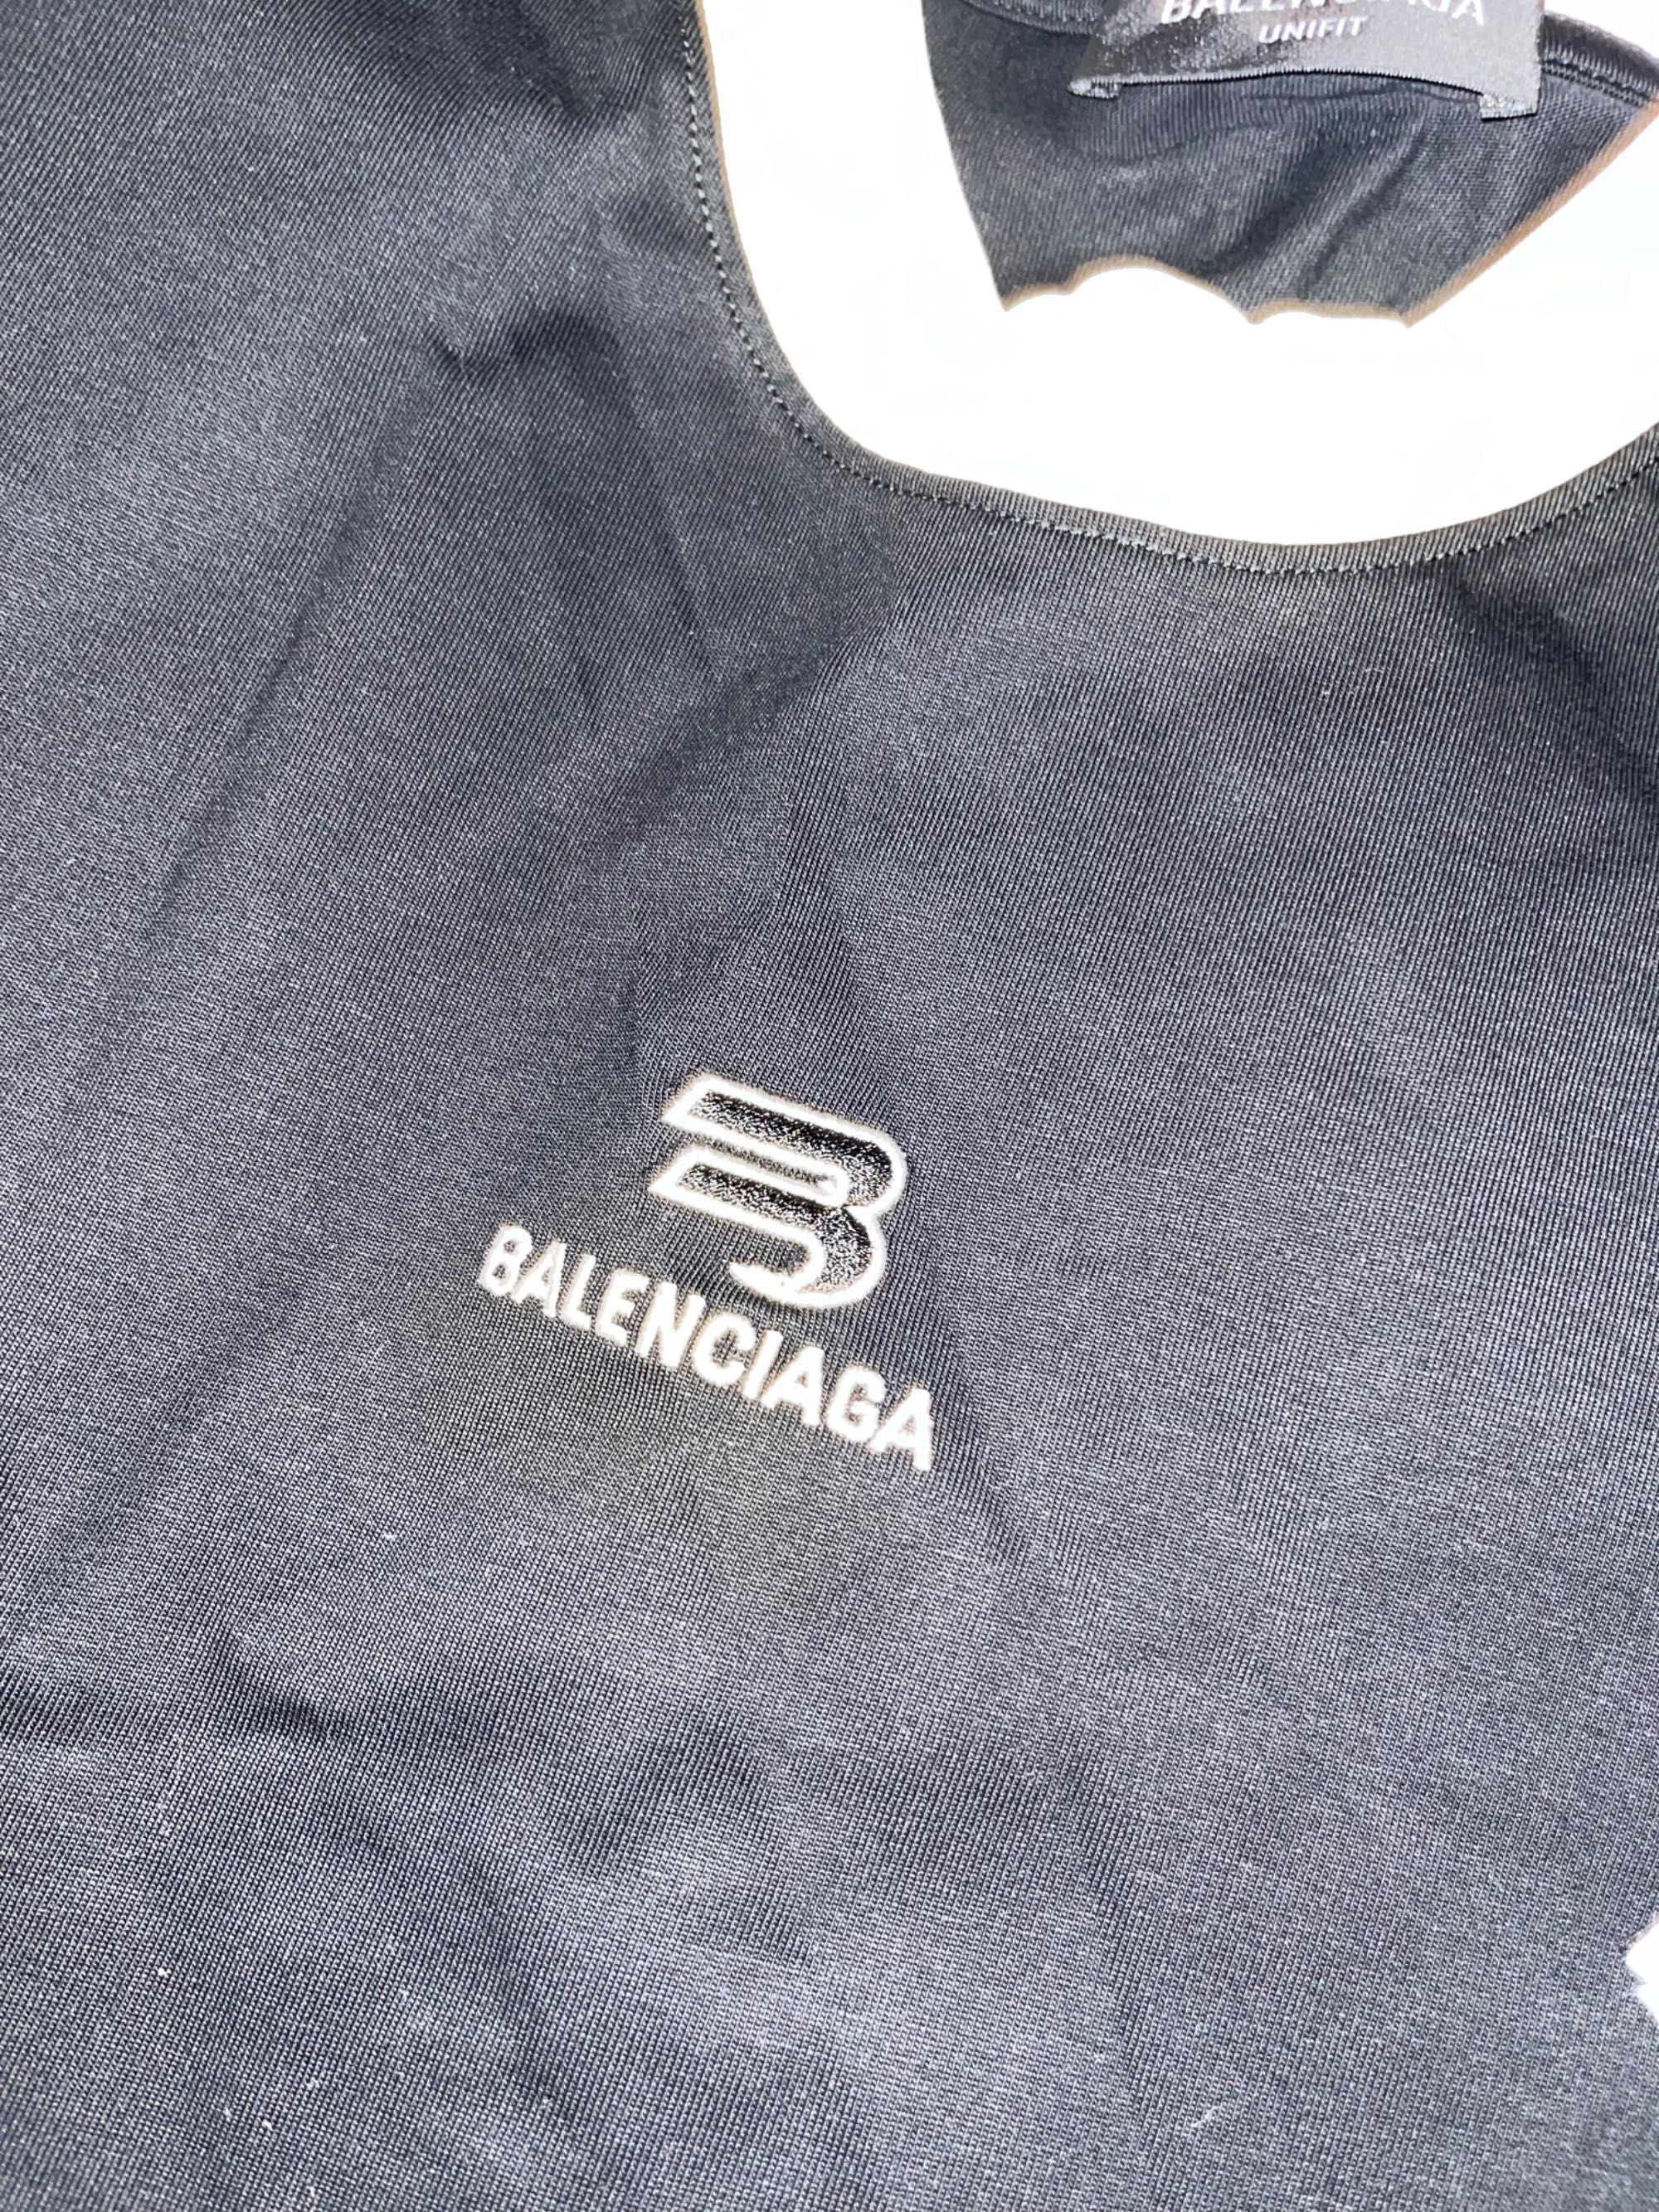 Bluzka Balenciaga